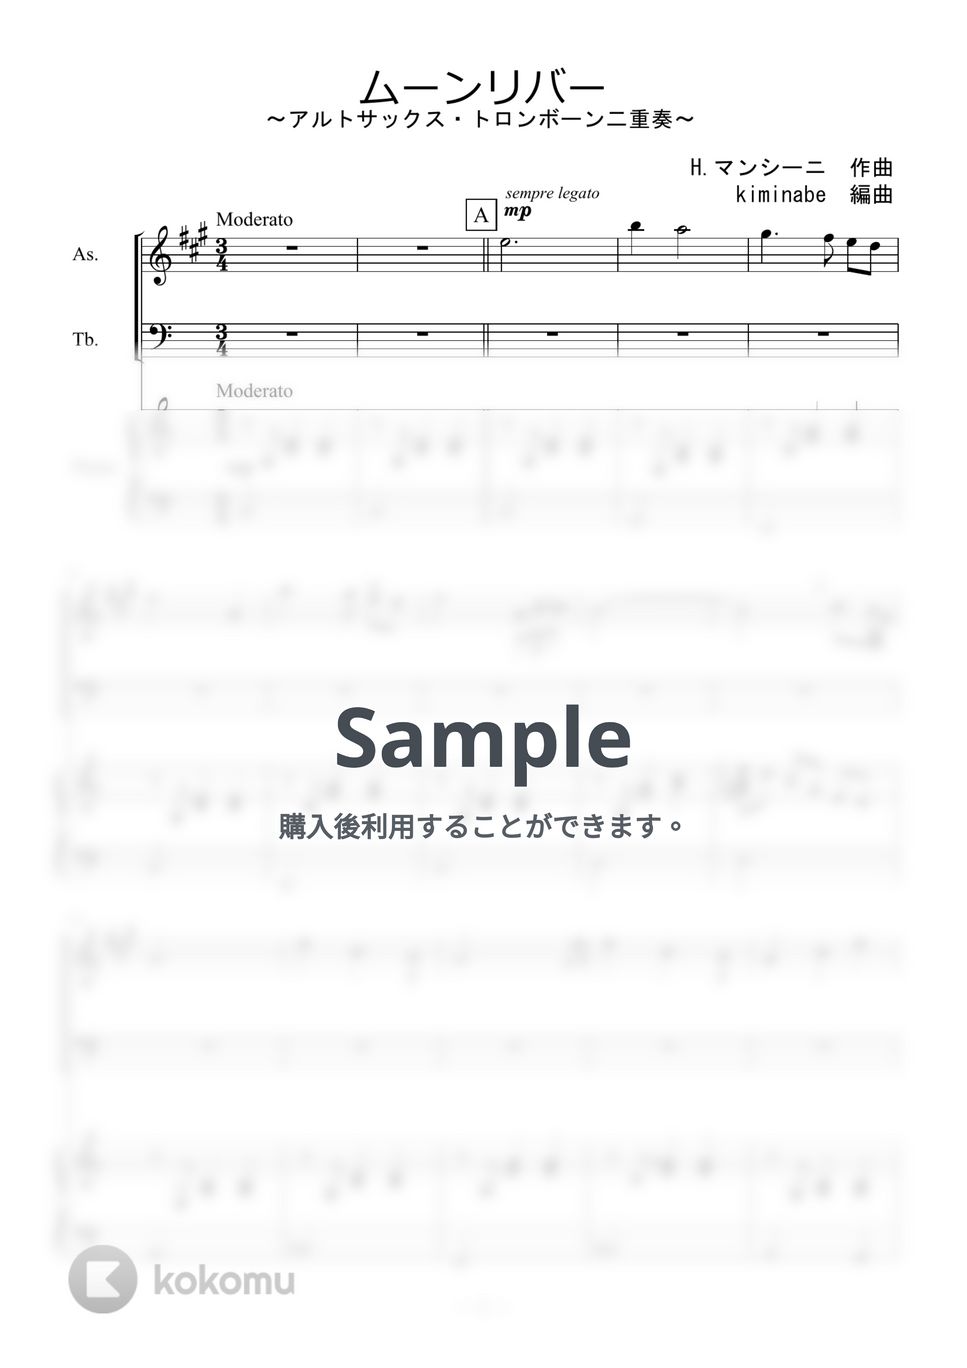 ヘンリー・マンシーニ - ムーンリバー (アルトサックス・トロンボーン二重奏) by kiminabe